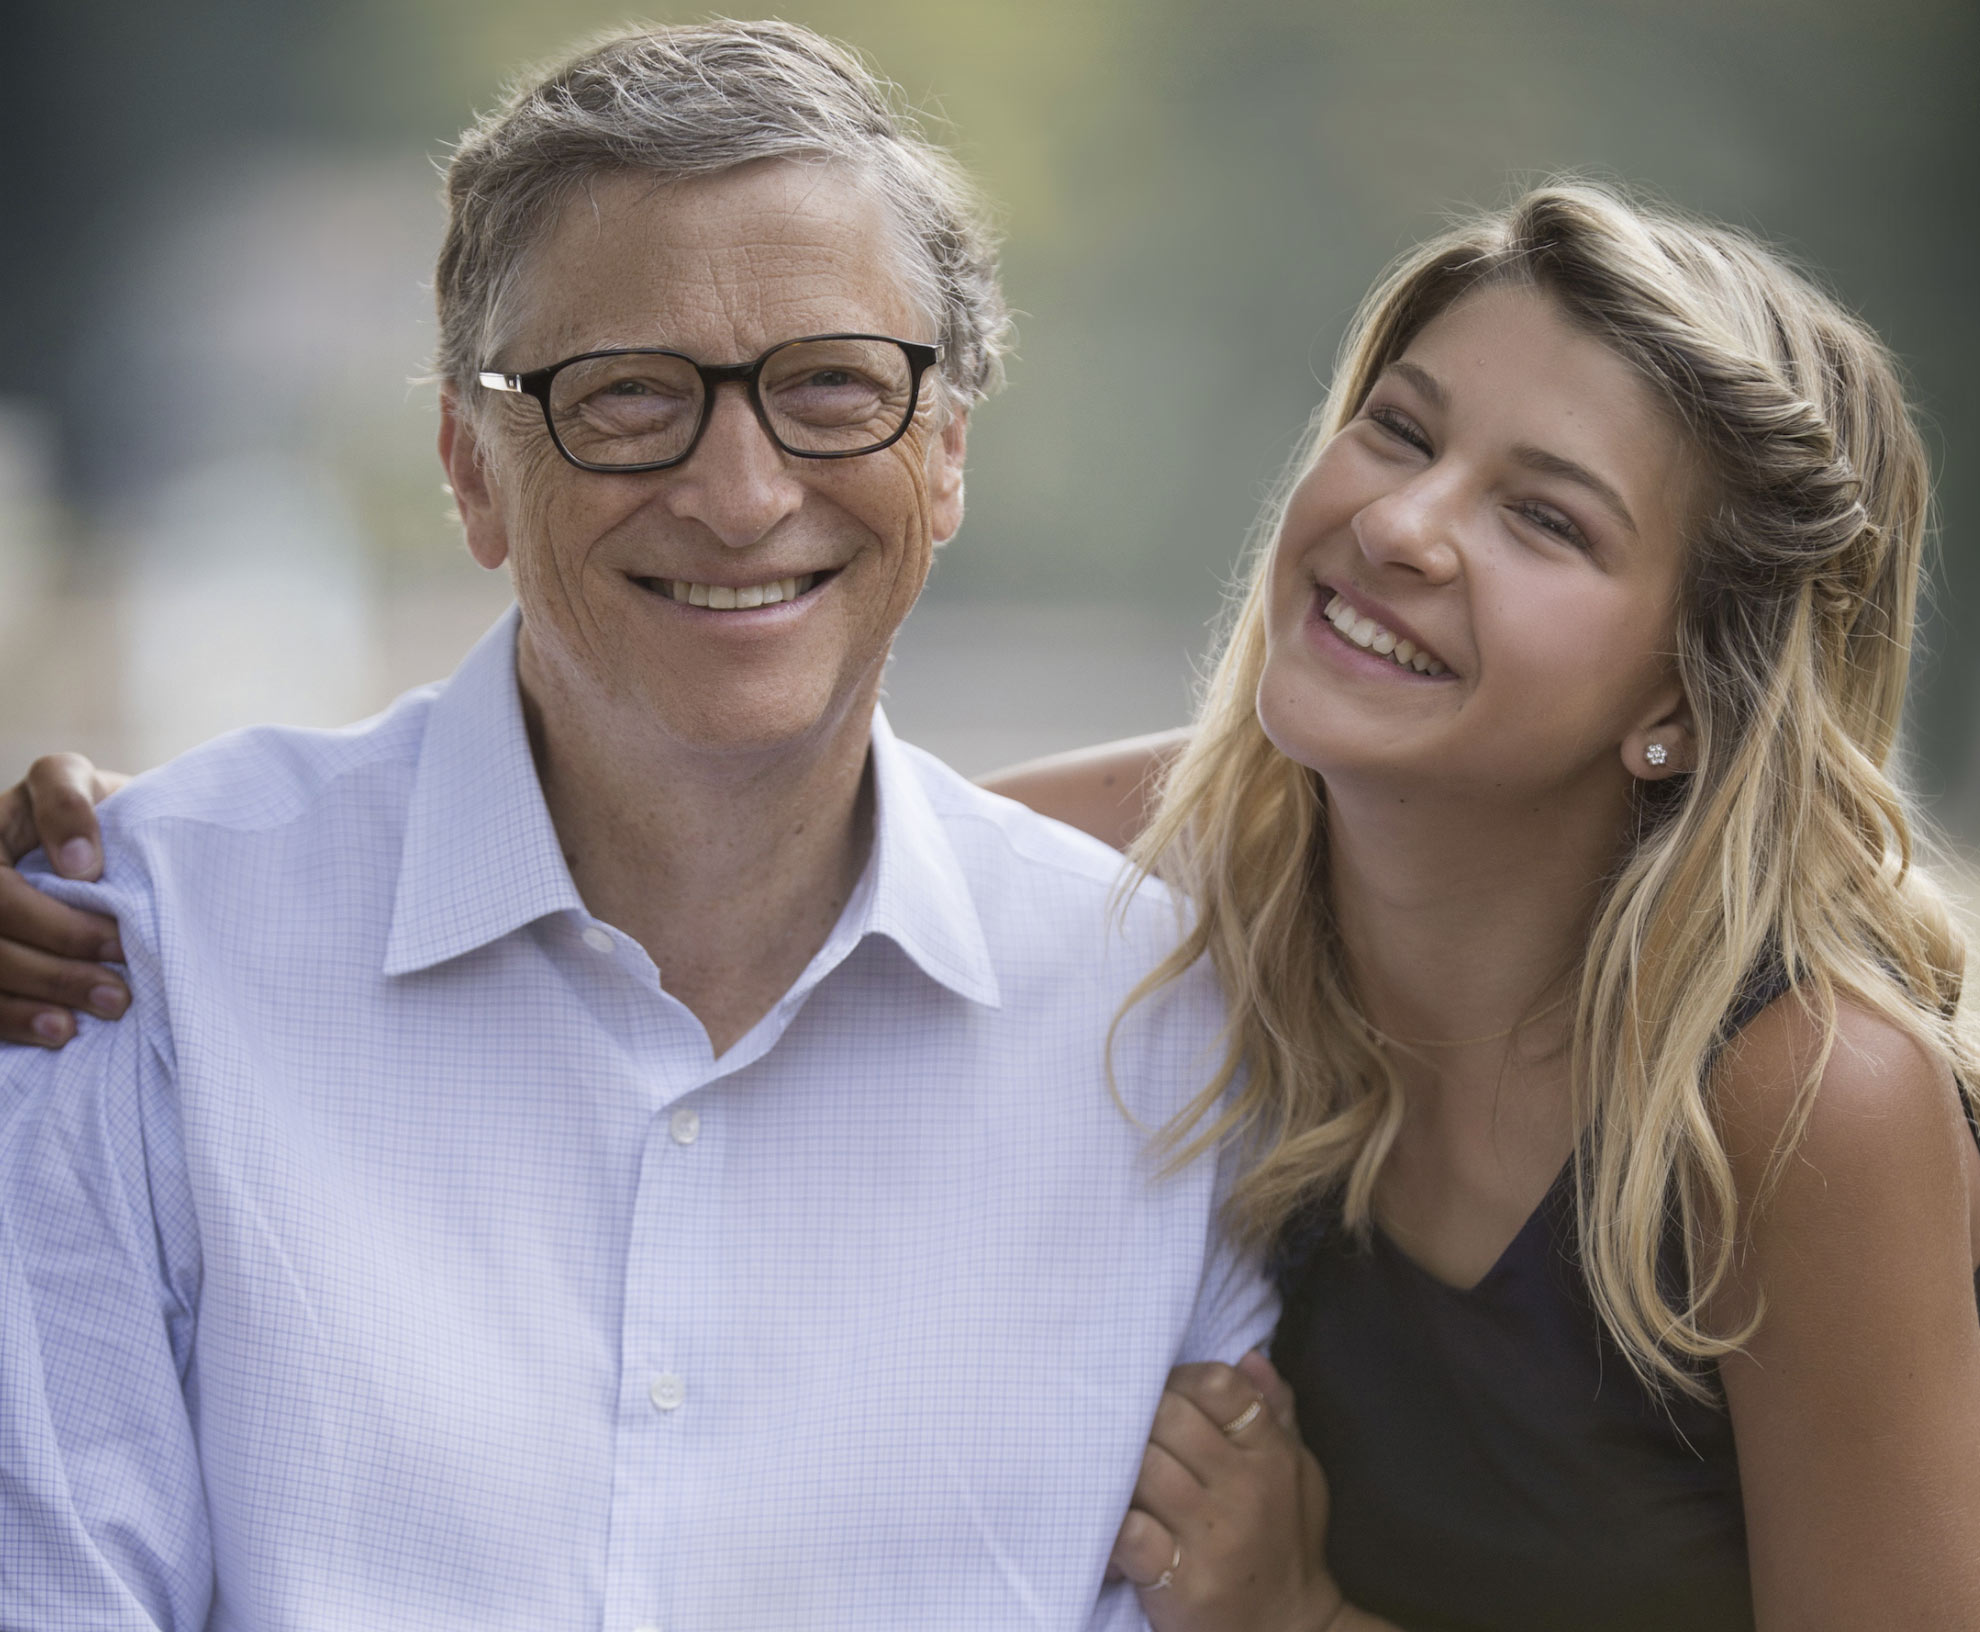 Ái nữ nhà tỷ phú Bill Gates đã đẹp lại còn giàu, mới 20 tuổi ai cũng phải ngưỡng mộ - 1